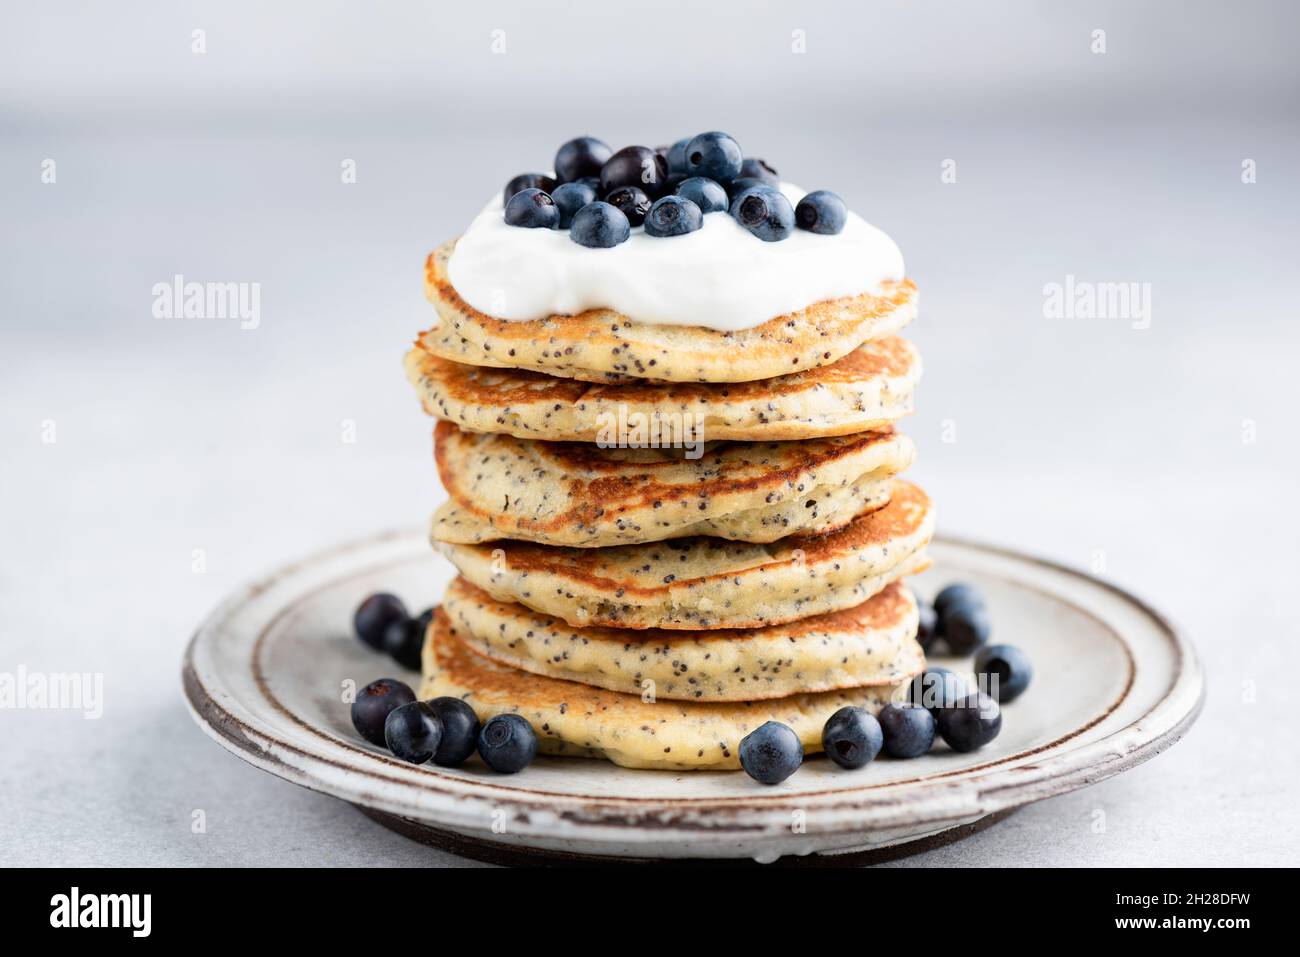 Frittelle di semi di papavero con yogurt e mirtilli su un piatto, frittelle dolci per la colazione, sfondo grigio in cemento Foto Stock